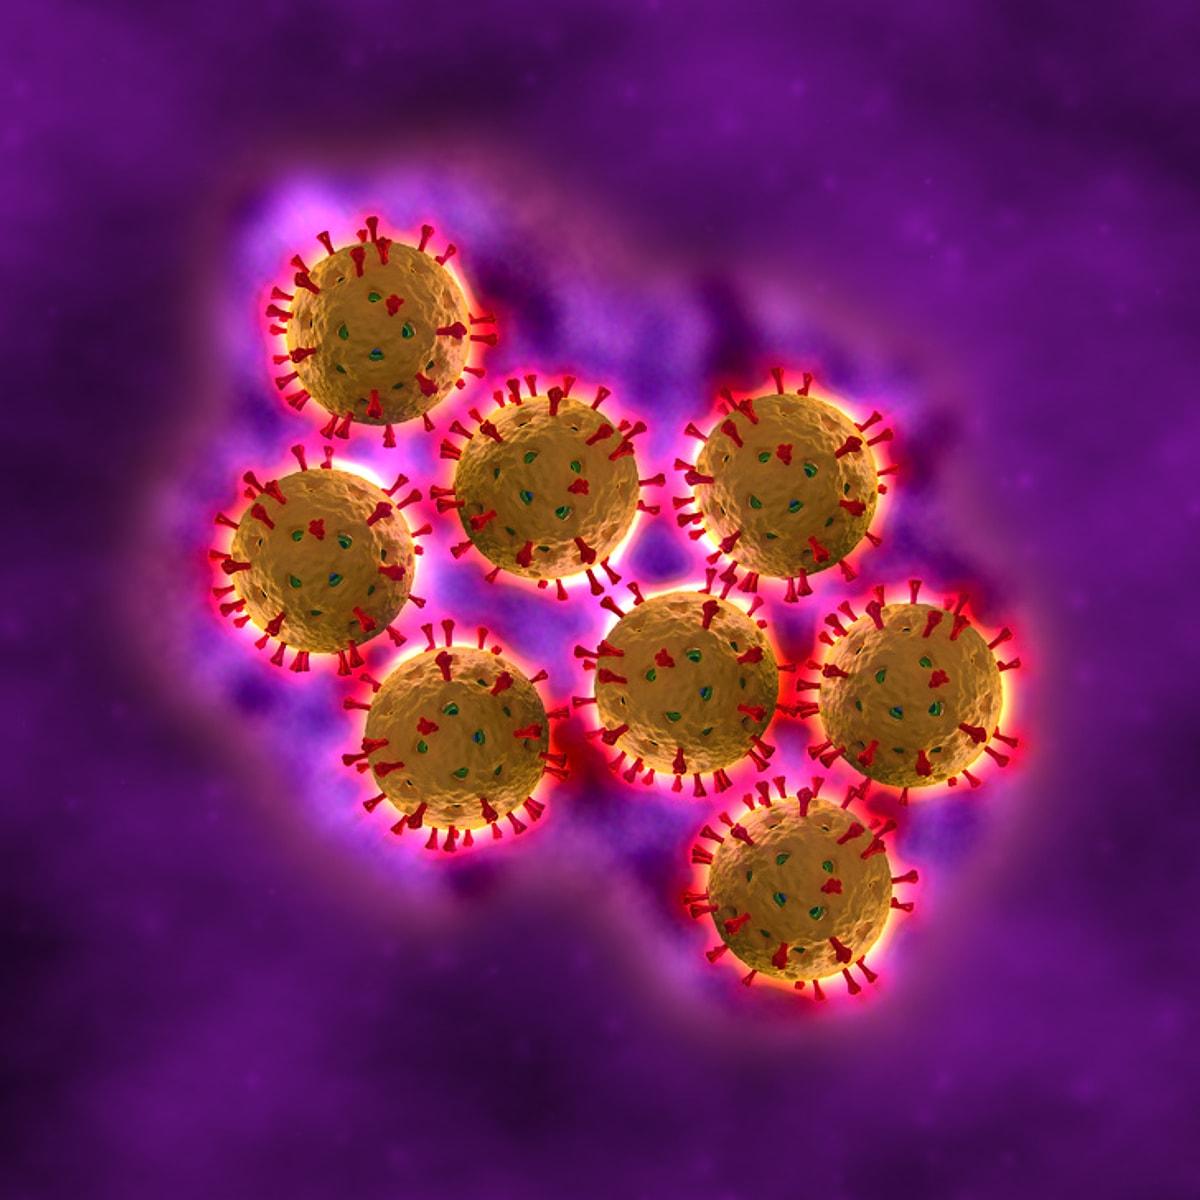 Ротавирус бактерия